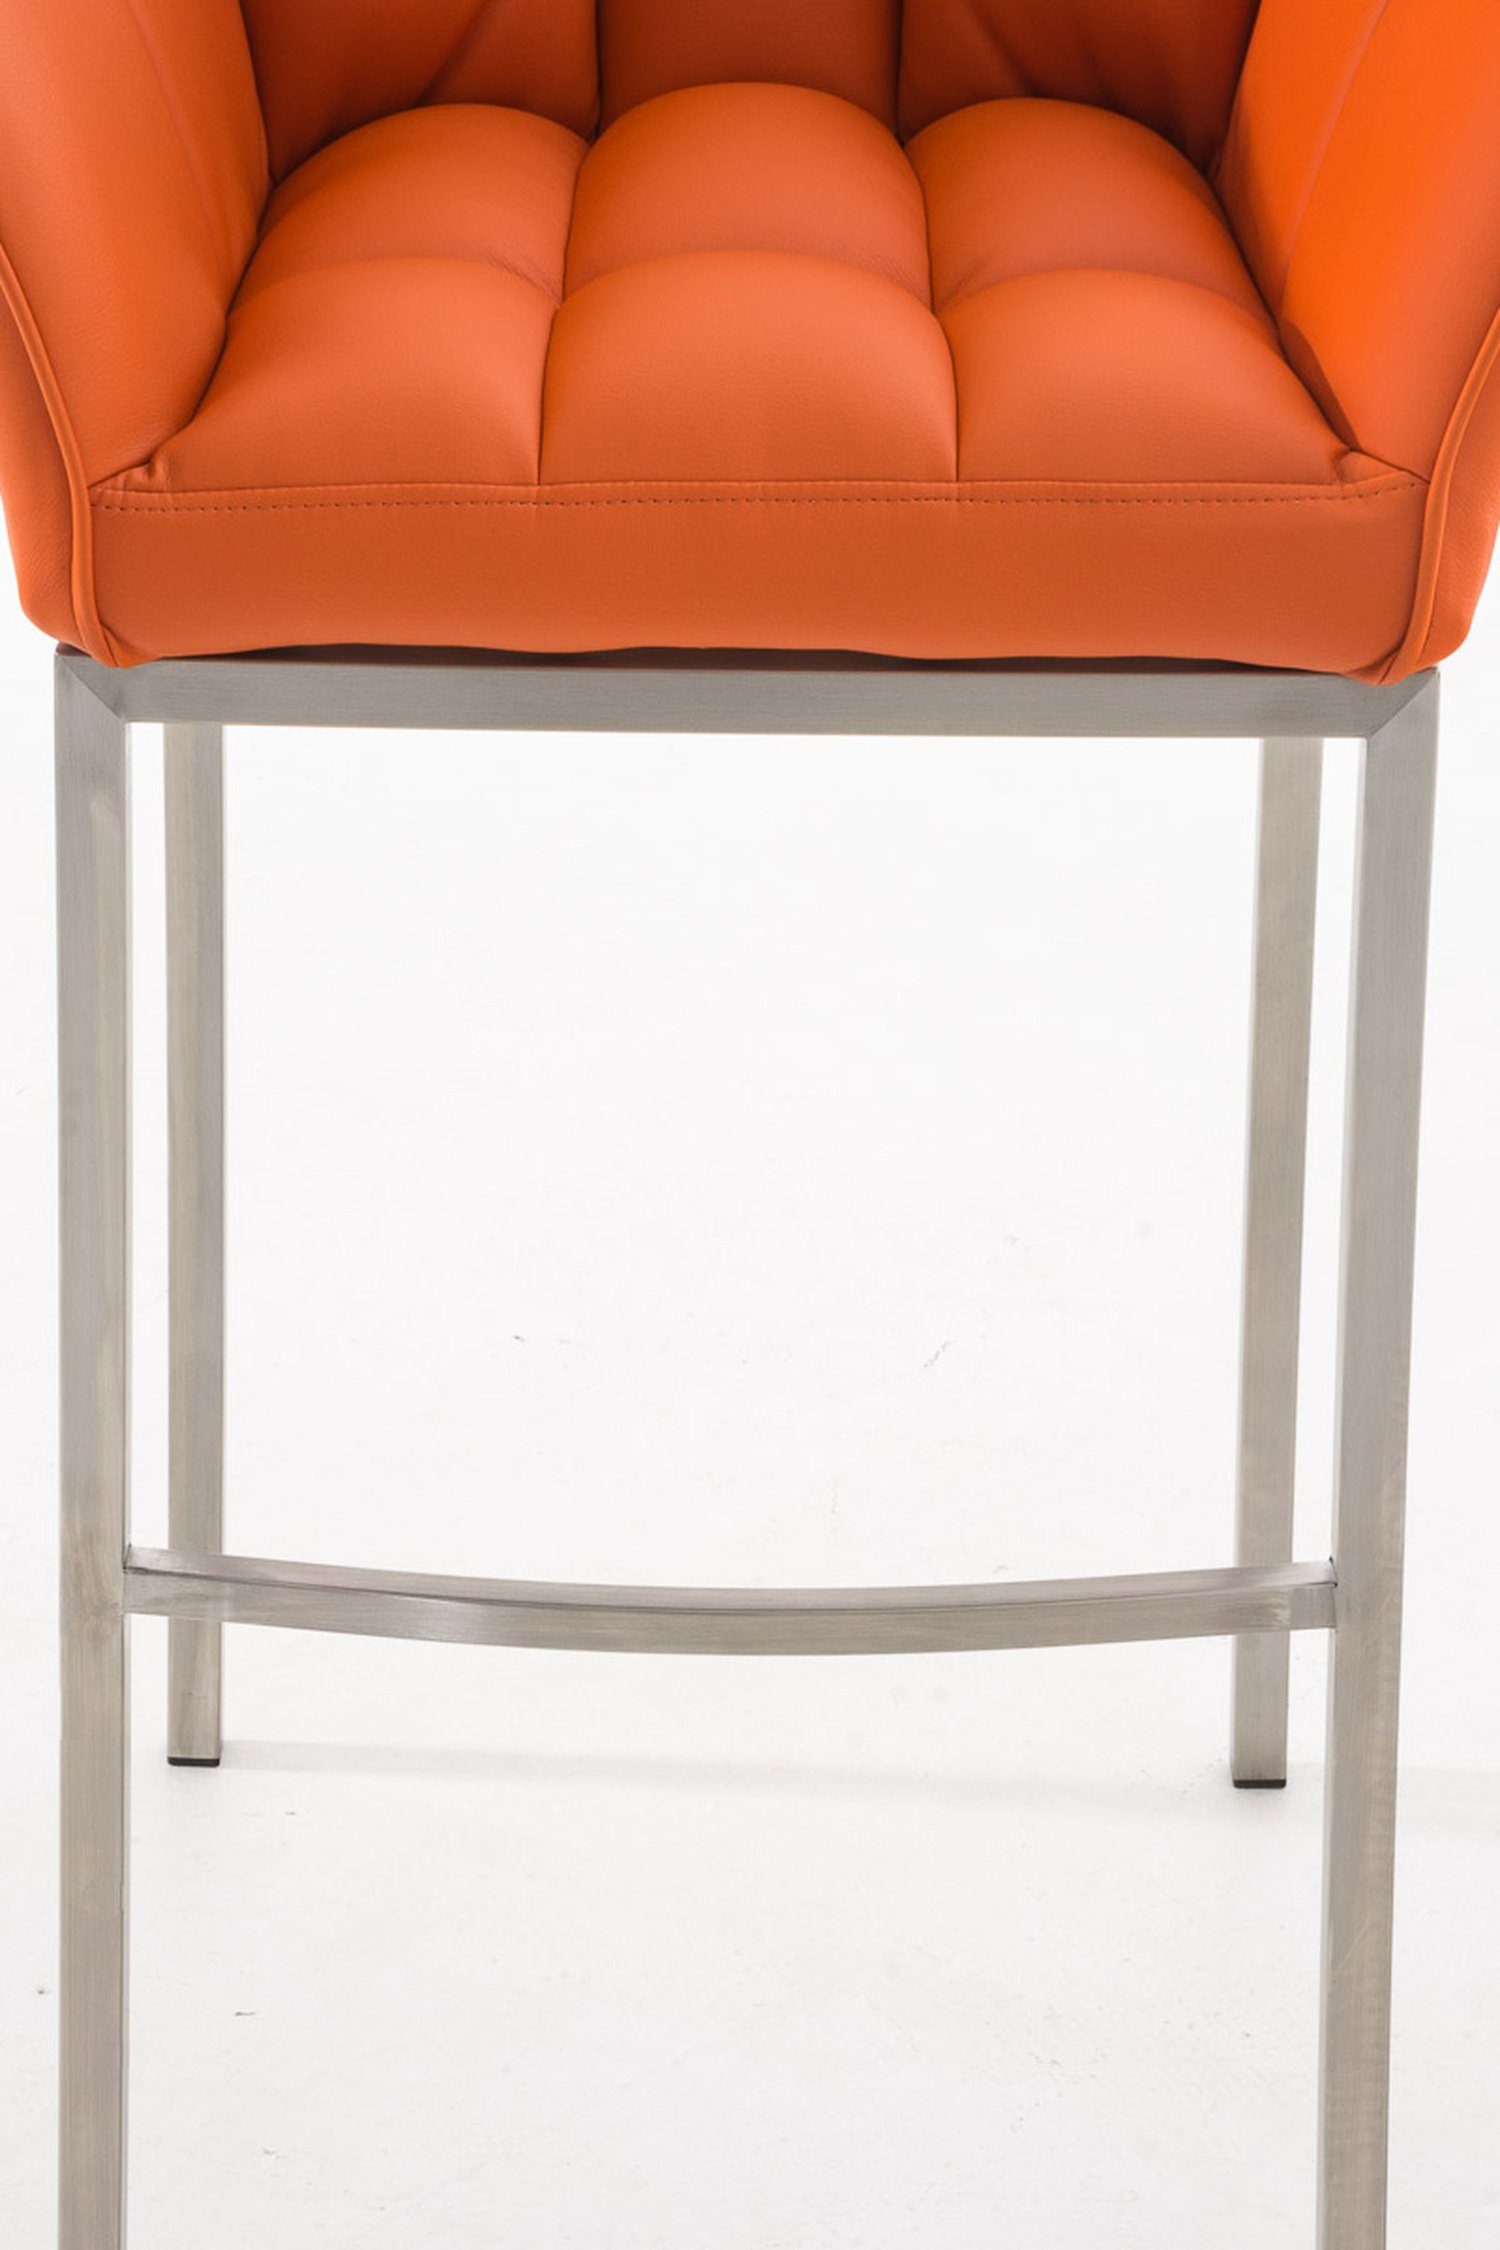 TPFLiving Barhocker Damaso (mit für - und - Rückenlehne Küche), Theke Gestell Sitzfläche: 4-Fuß Edelstahl Hocker Orange & Kunstleder Fußstütze